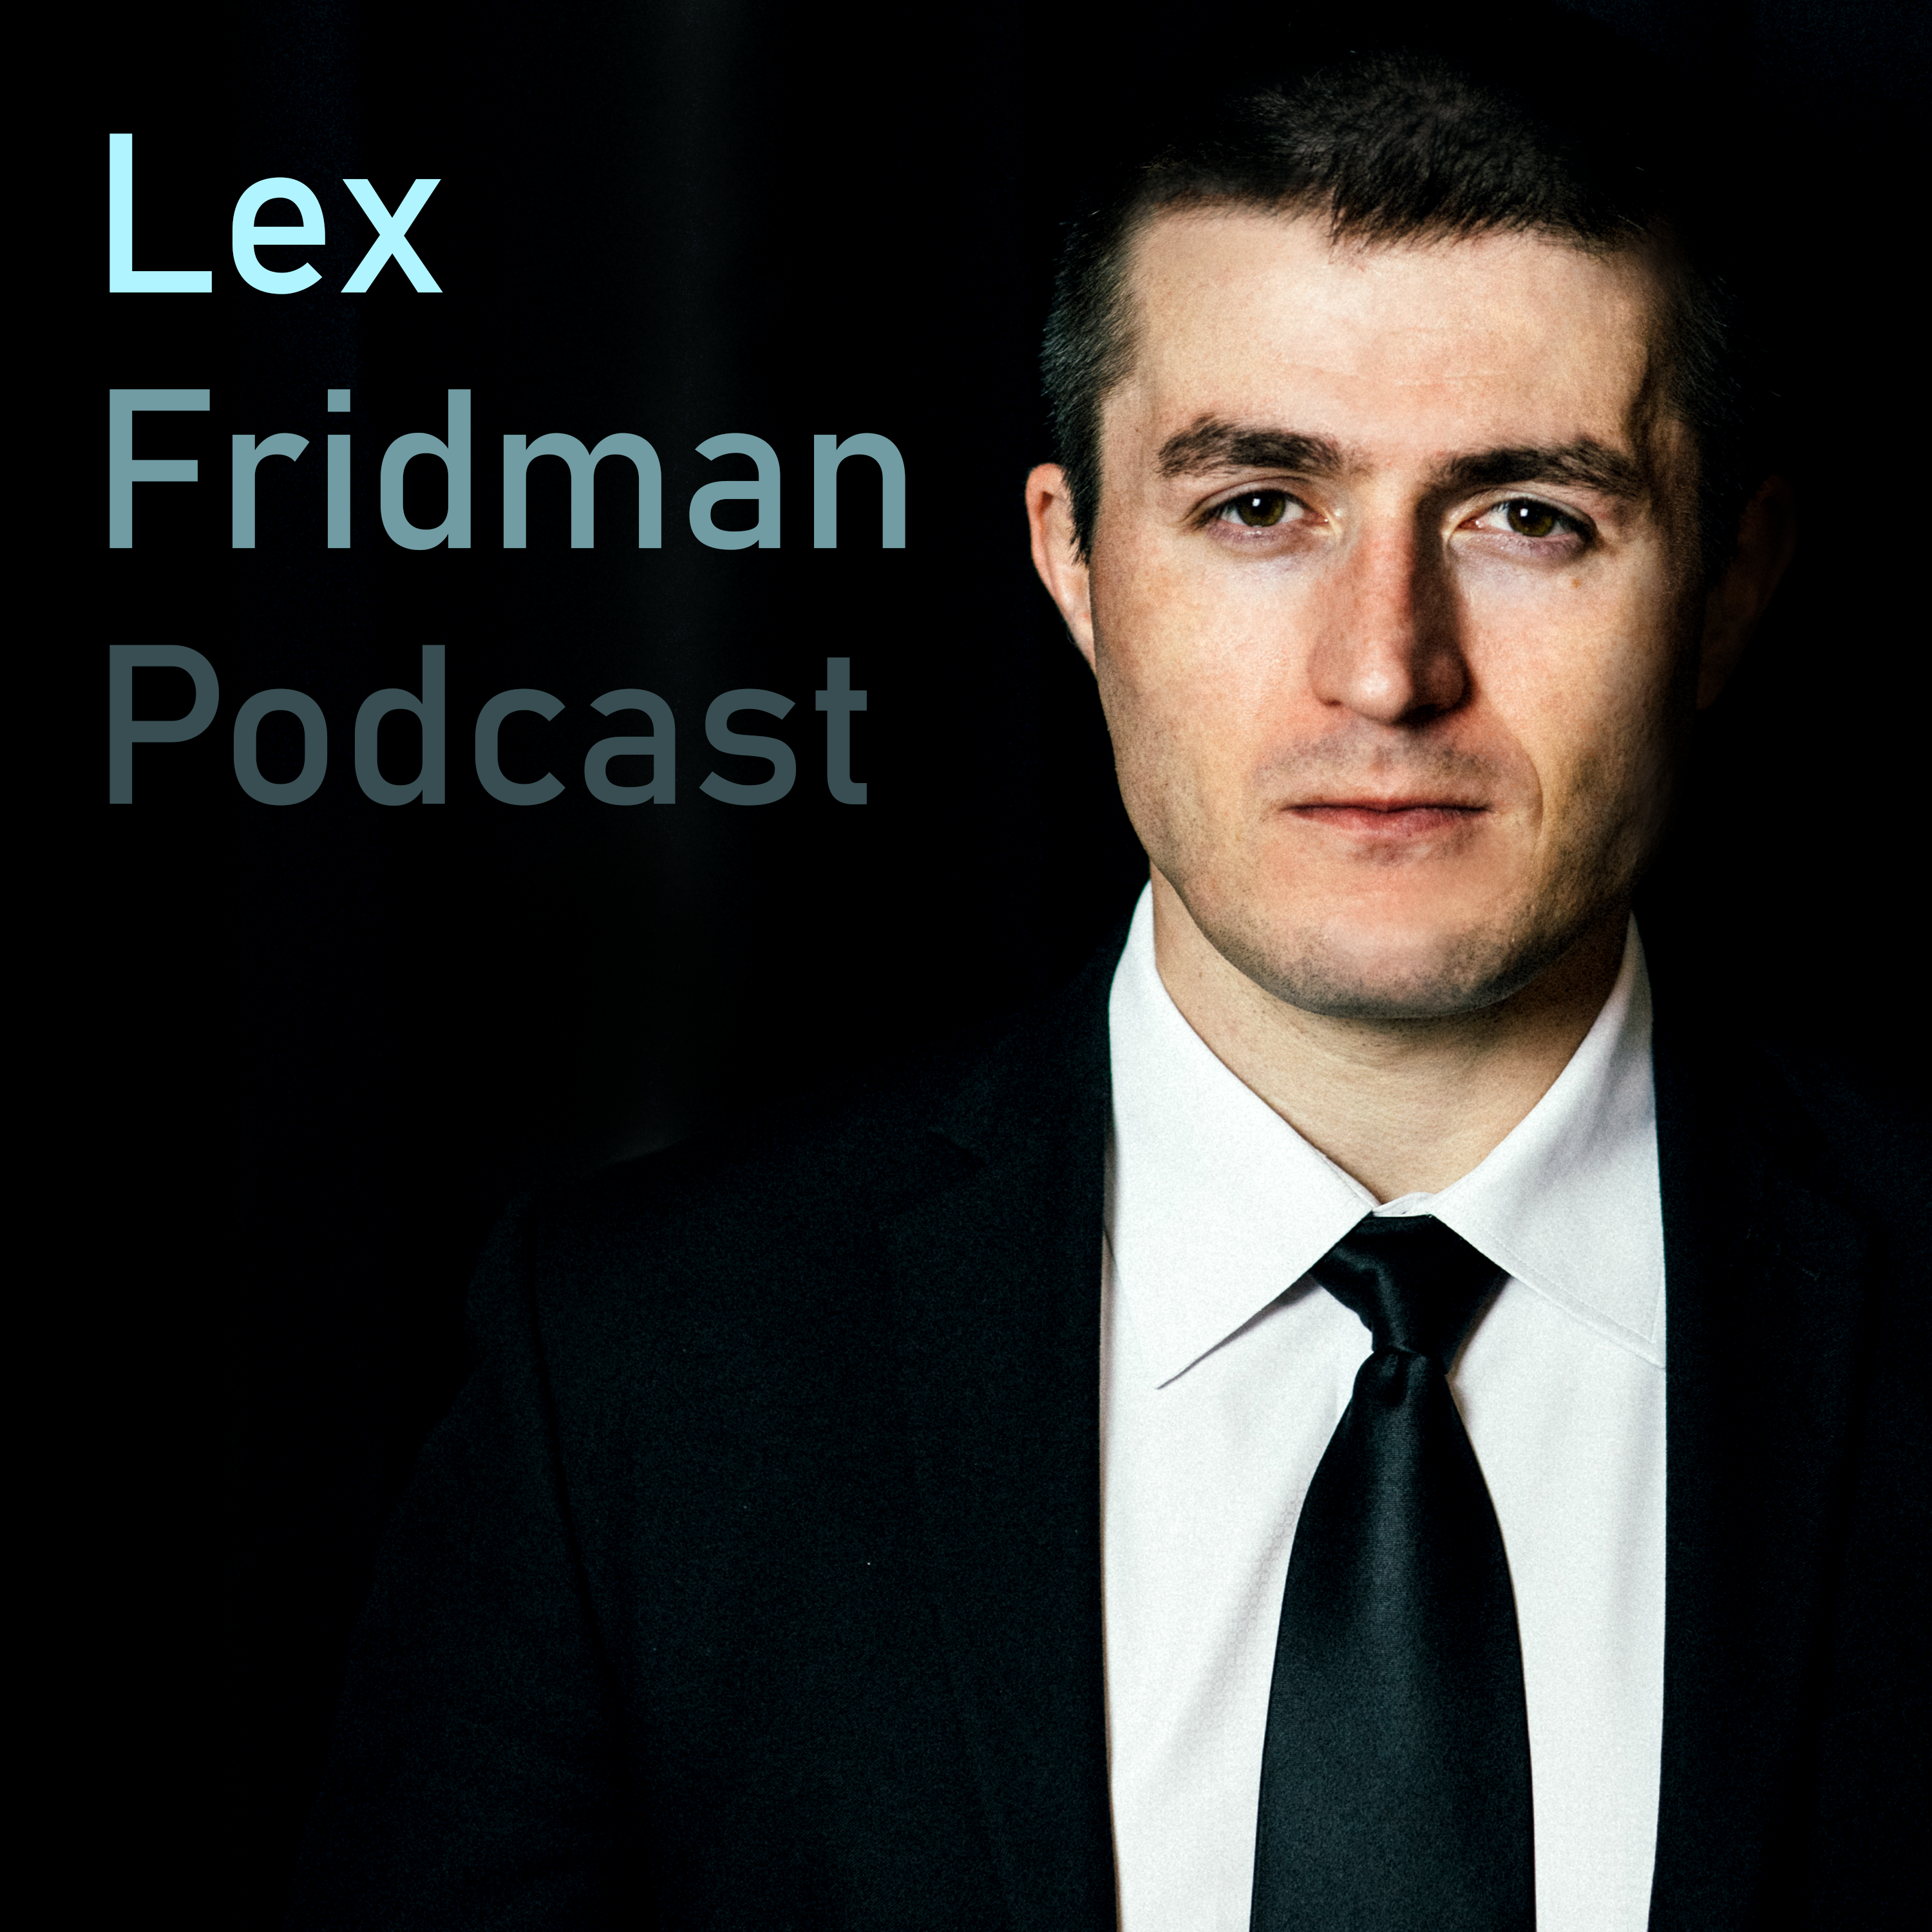 Lex Fridman Podcast:lexfridman@gmail.com (Lex Fridman)